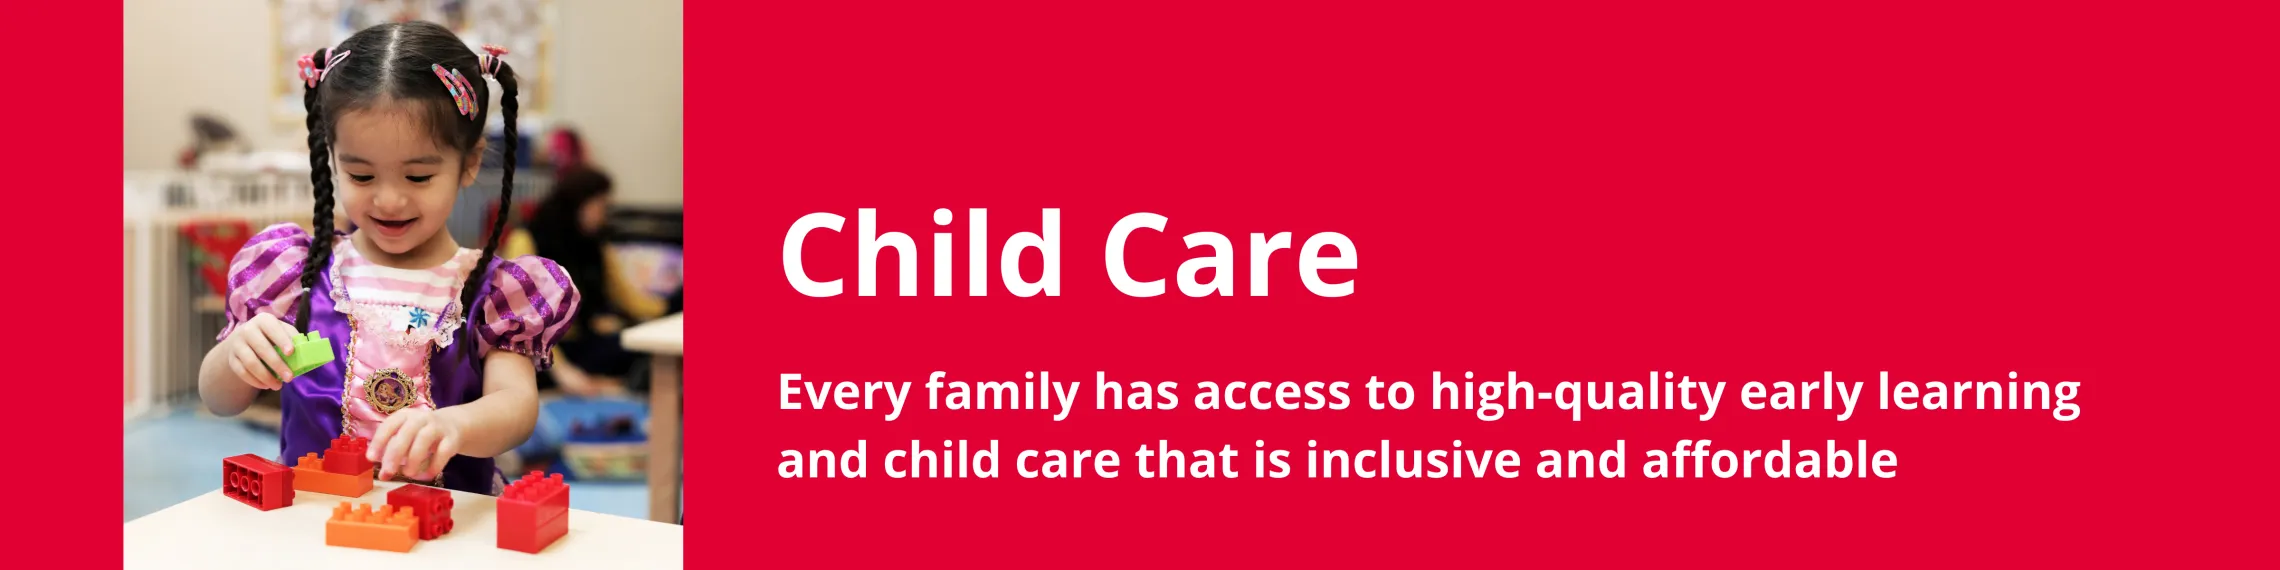 child_care